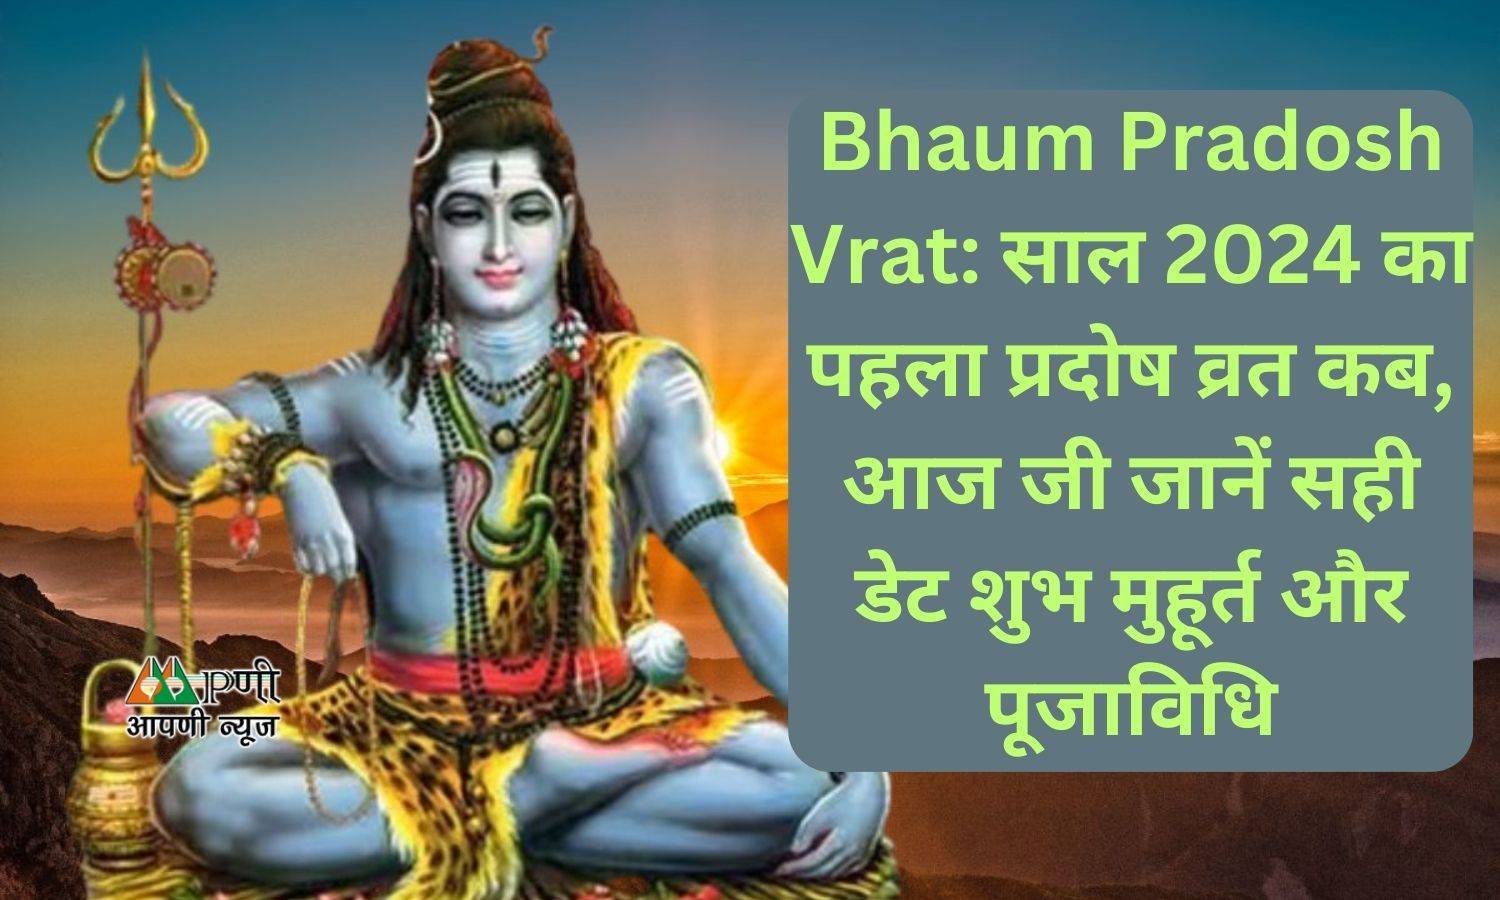 Bhaum Pradosh Vrat: साल 2024 का पहला प्रदोष व्रत कब, आज जी जानें सही डेट शुभ मुहूर्त और पूजाविधि